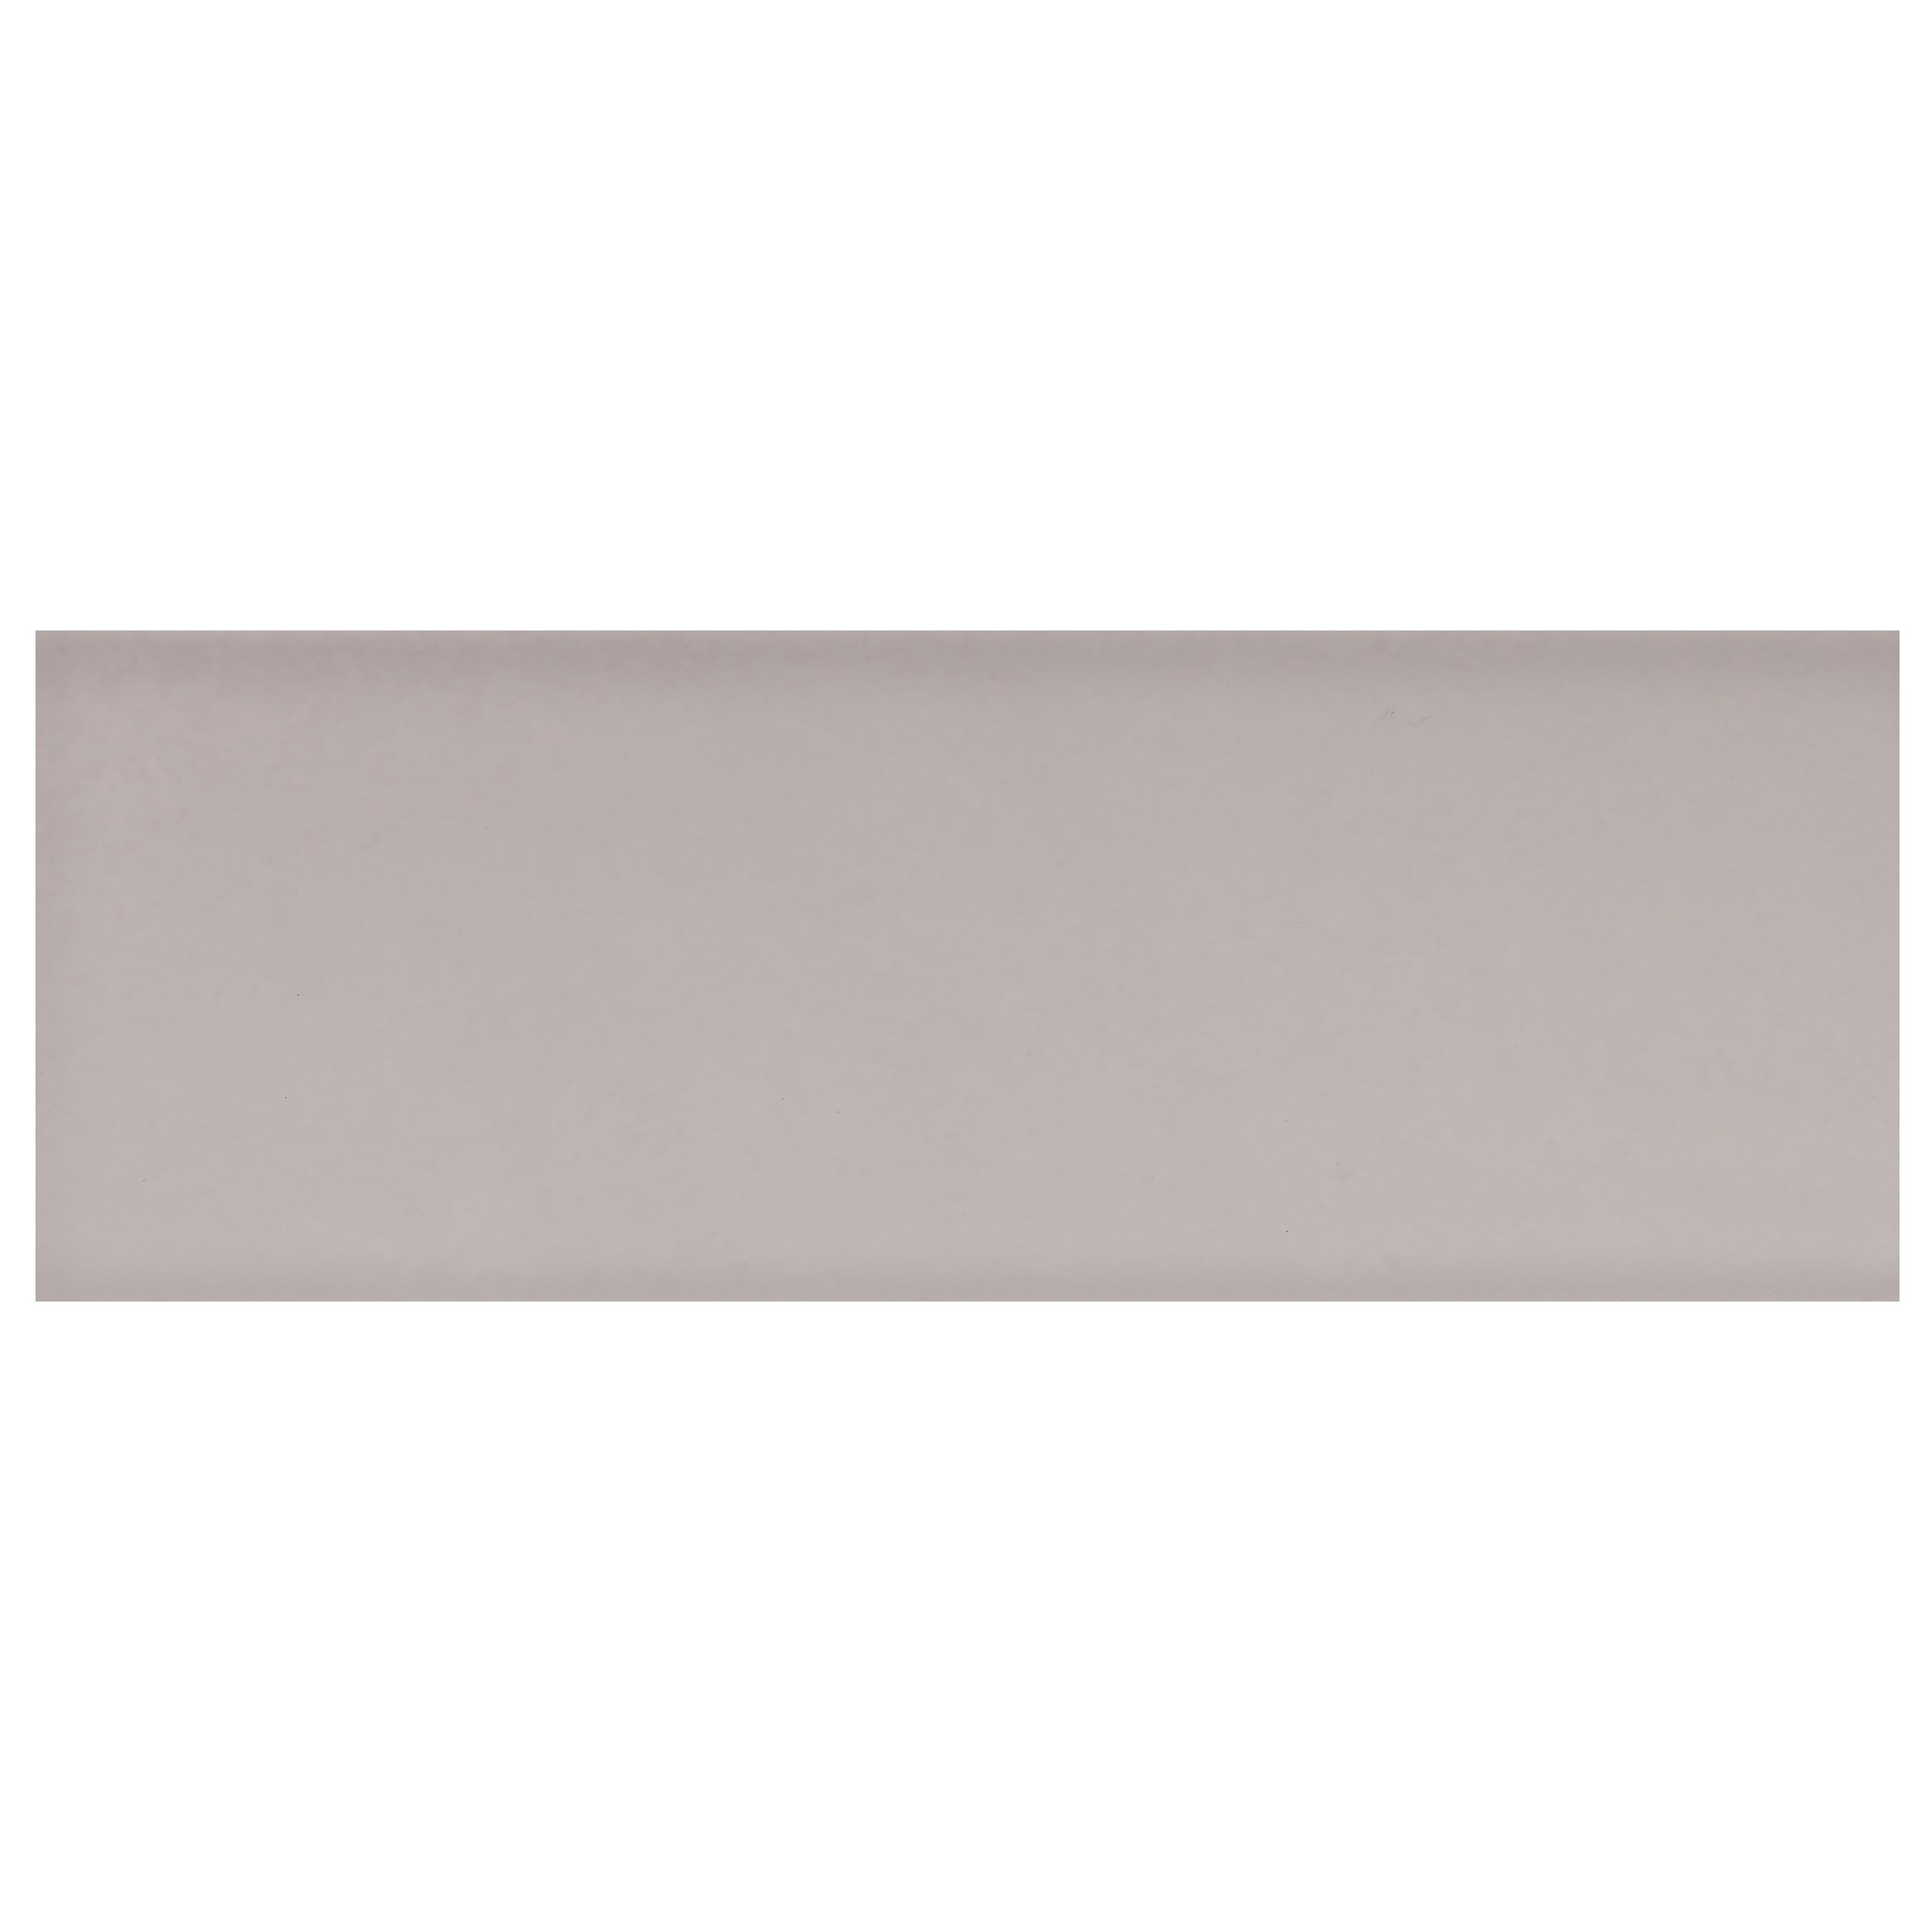 Johnson Tiles Mayfair Light grey Gloss Plain Ceramic Indoor Wall tile, Pack of 54, (L)245mm (W)75mm